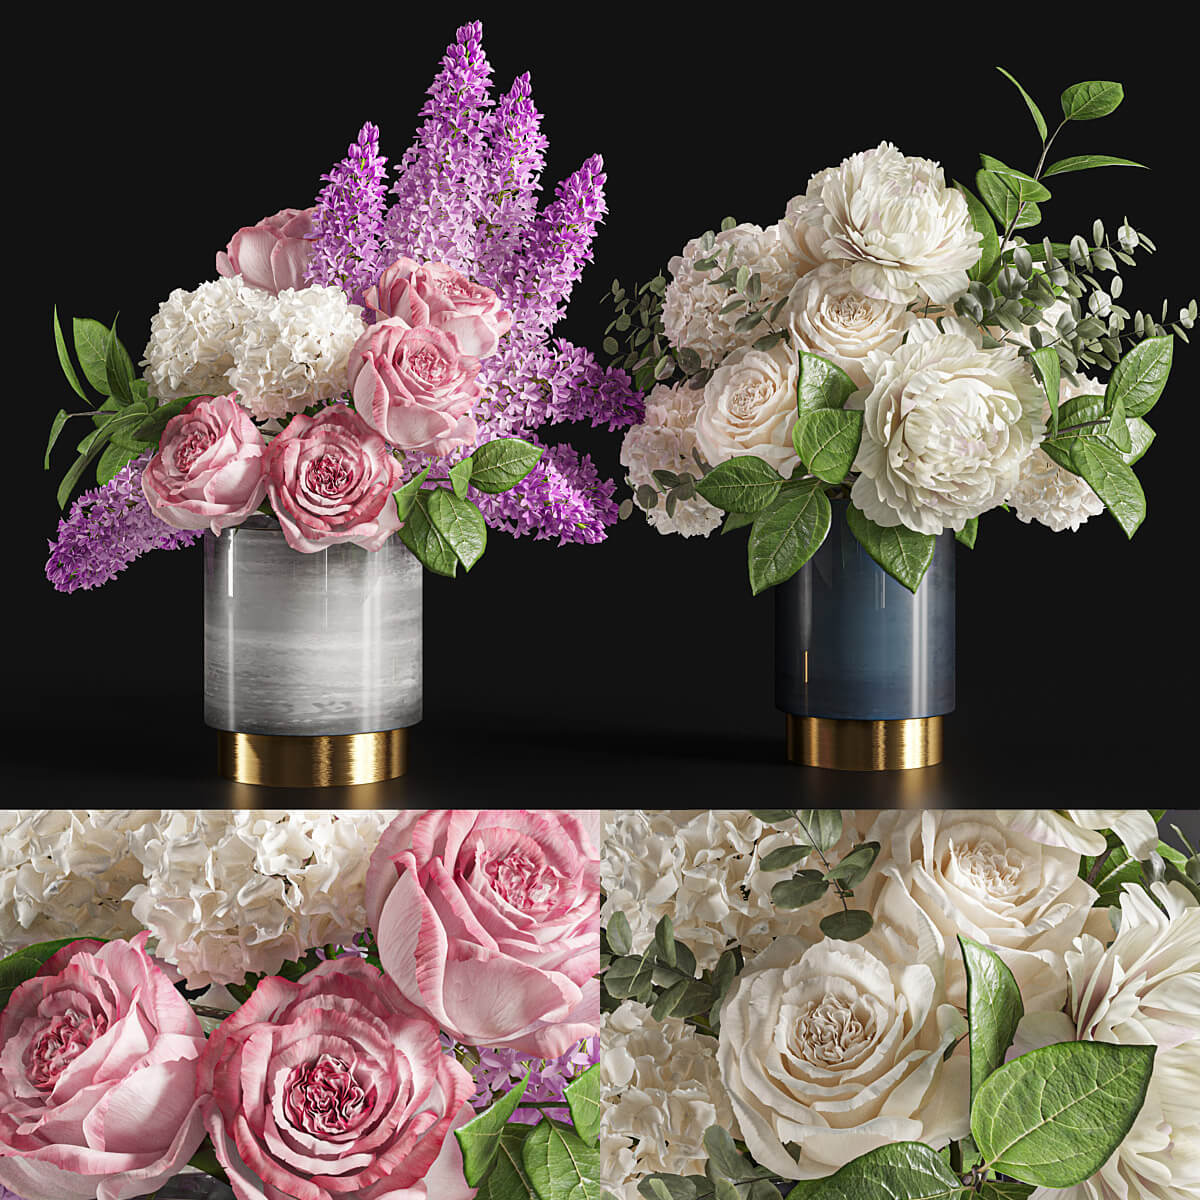 装饰花瓶中的玫瑰和绣球花束3D模型（FBX,MAX）插图